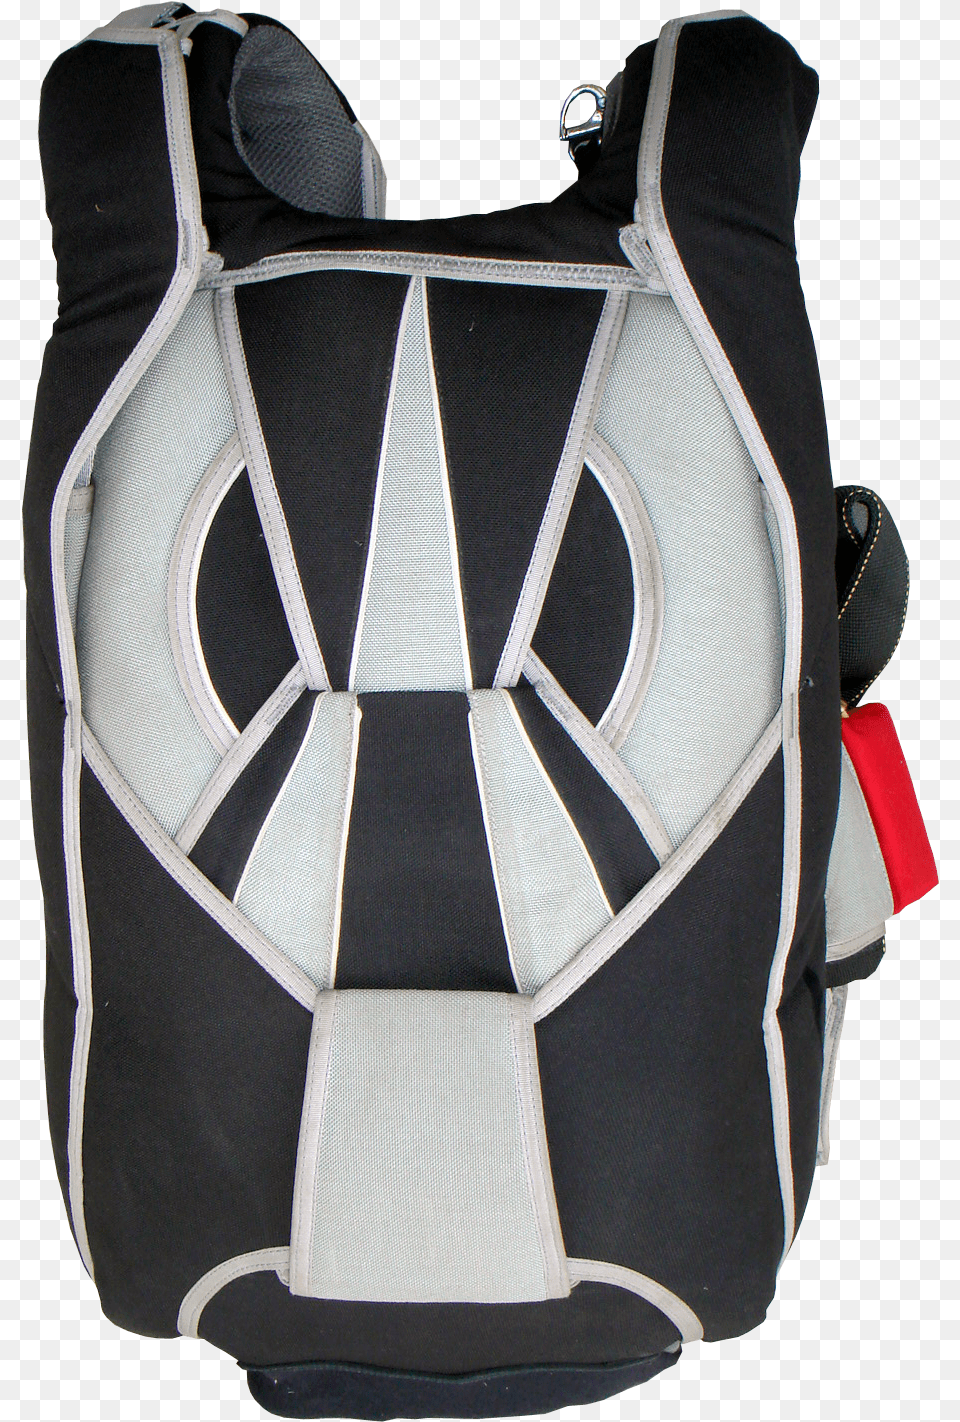 Messenger Bag, Backpack, Clothing, Lifejacket, Vest Png Image